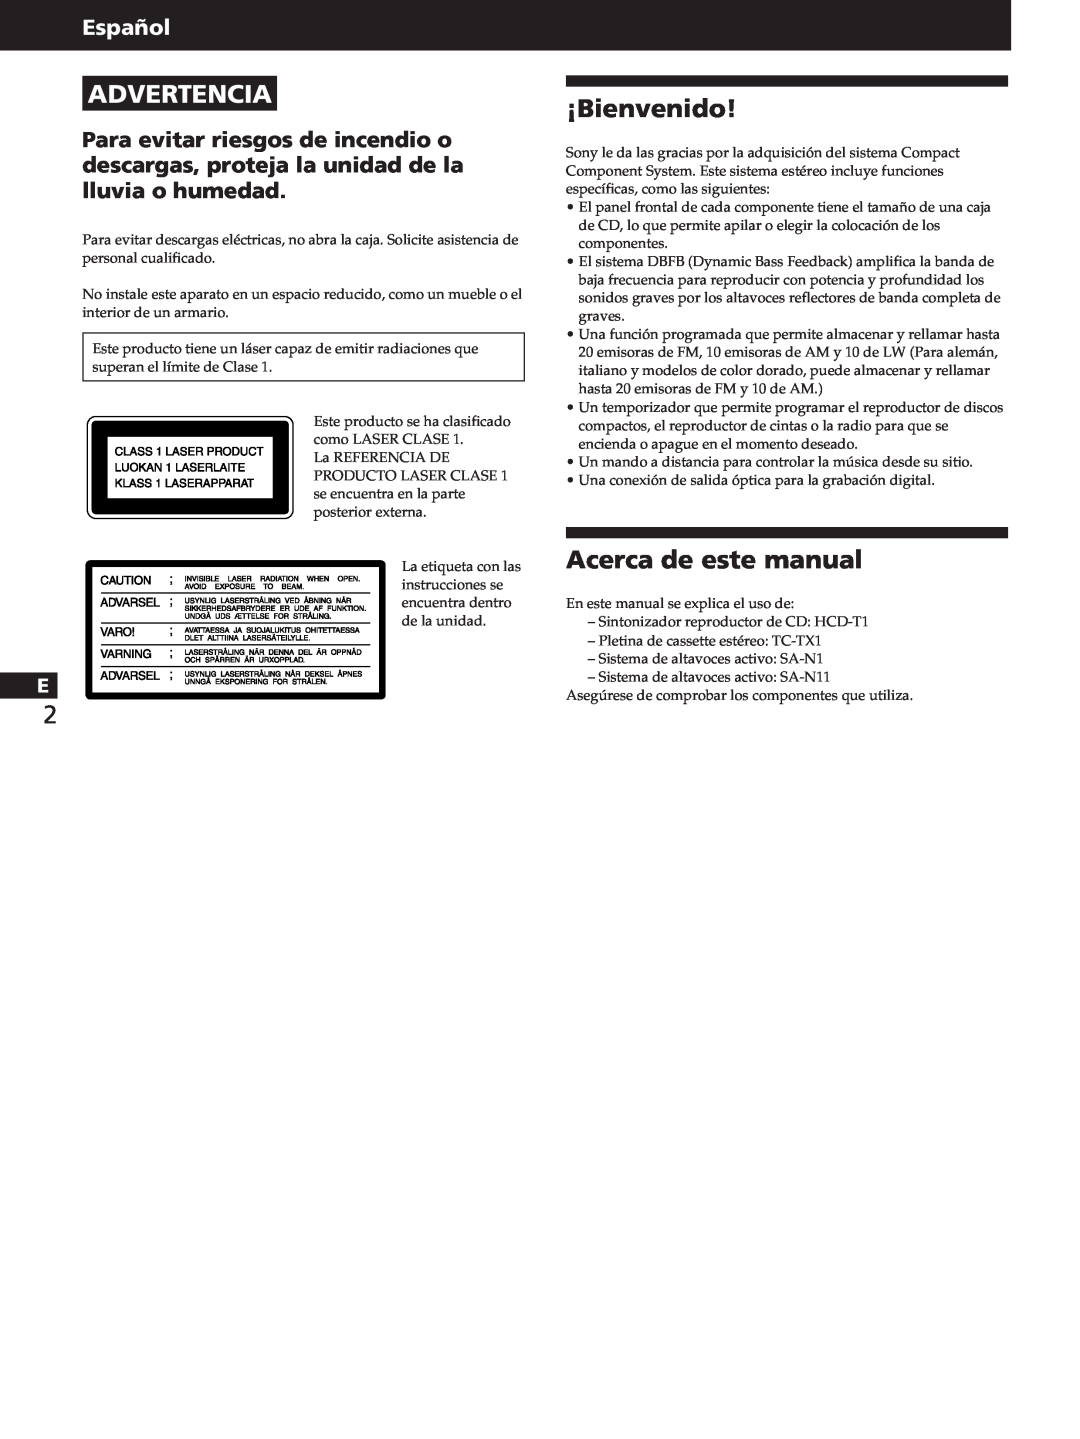 Sony HCD-T1, SA-N11, TC-TX1 Advertencia, ¡Bienvenido, Acerca de este manual, Español 